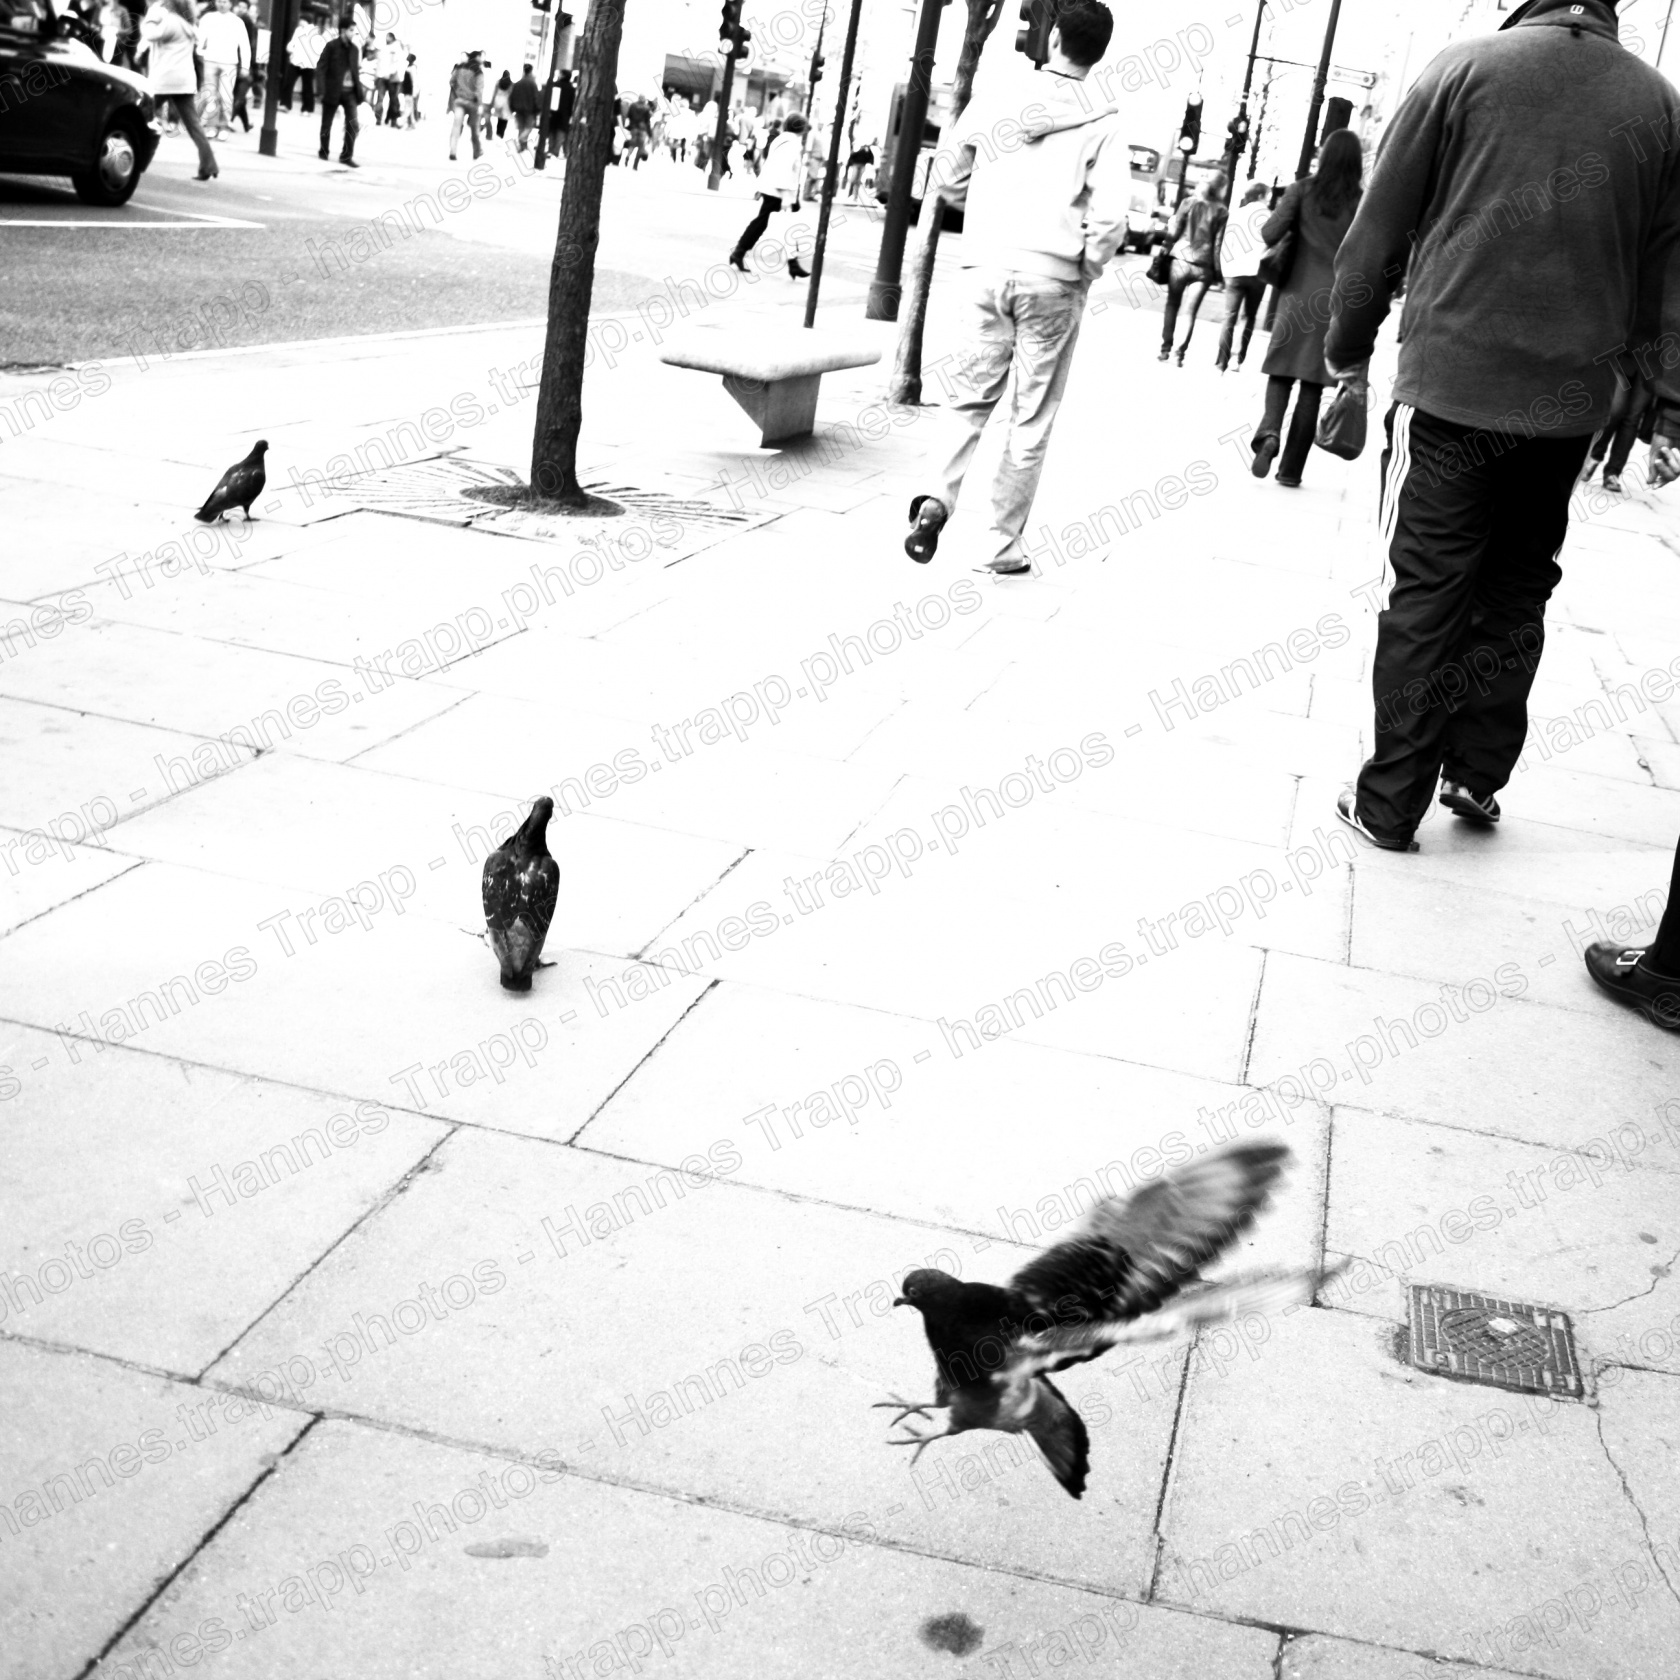 Foto: People of London - pigeon